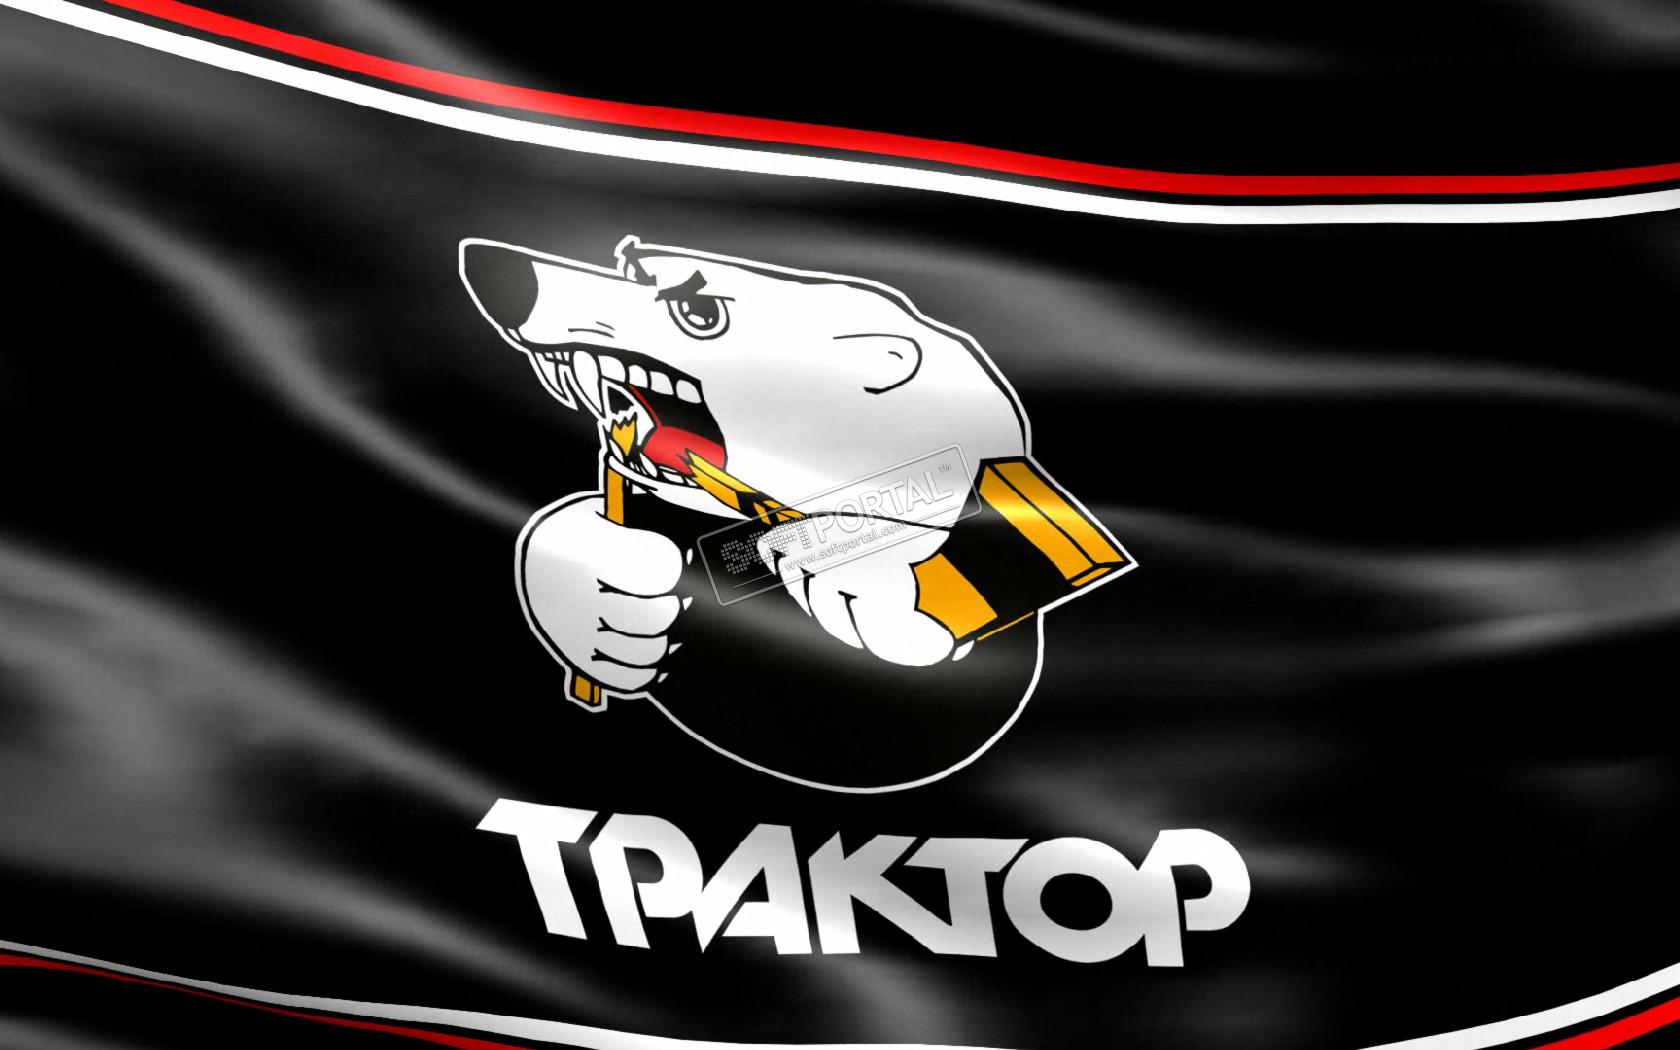 Русская медная компания стала титульным спонсором хоккейного клуба «Трактор»